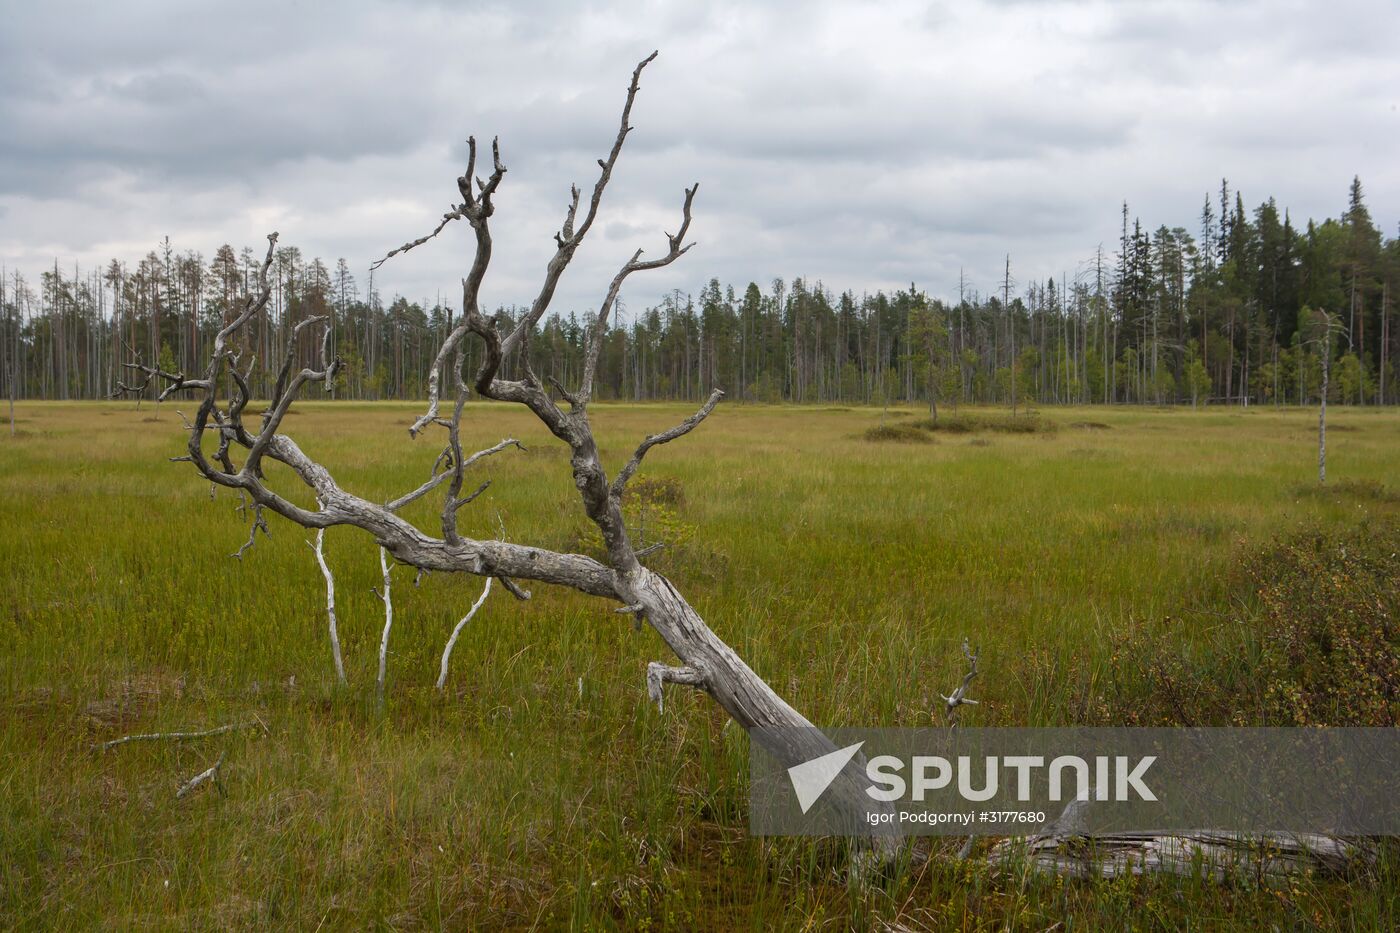 Vodlozero national park in Arkhangelsk Region